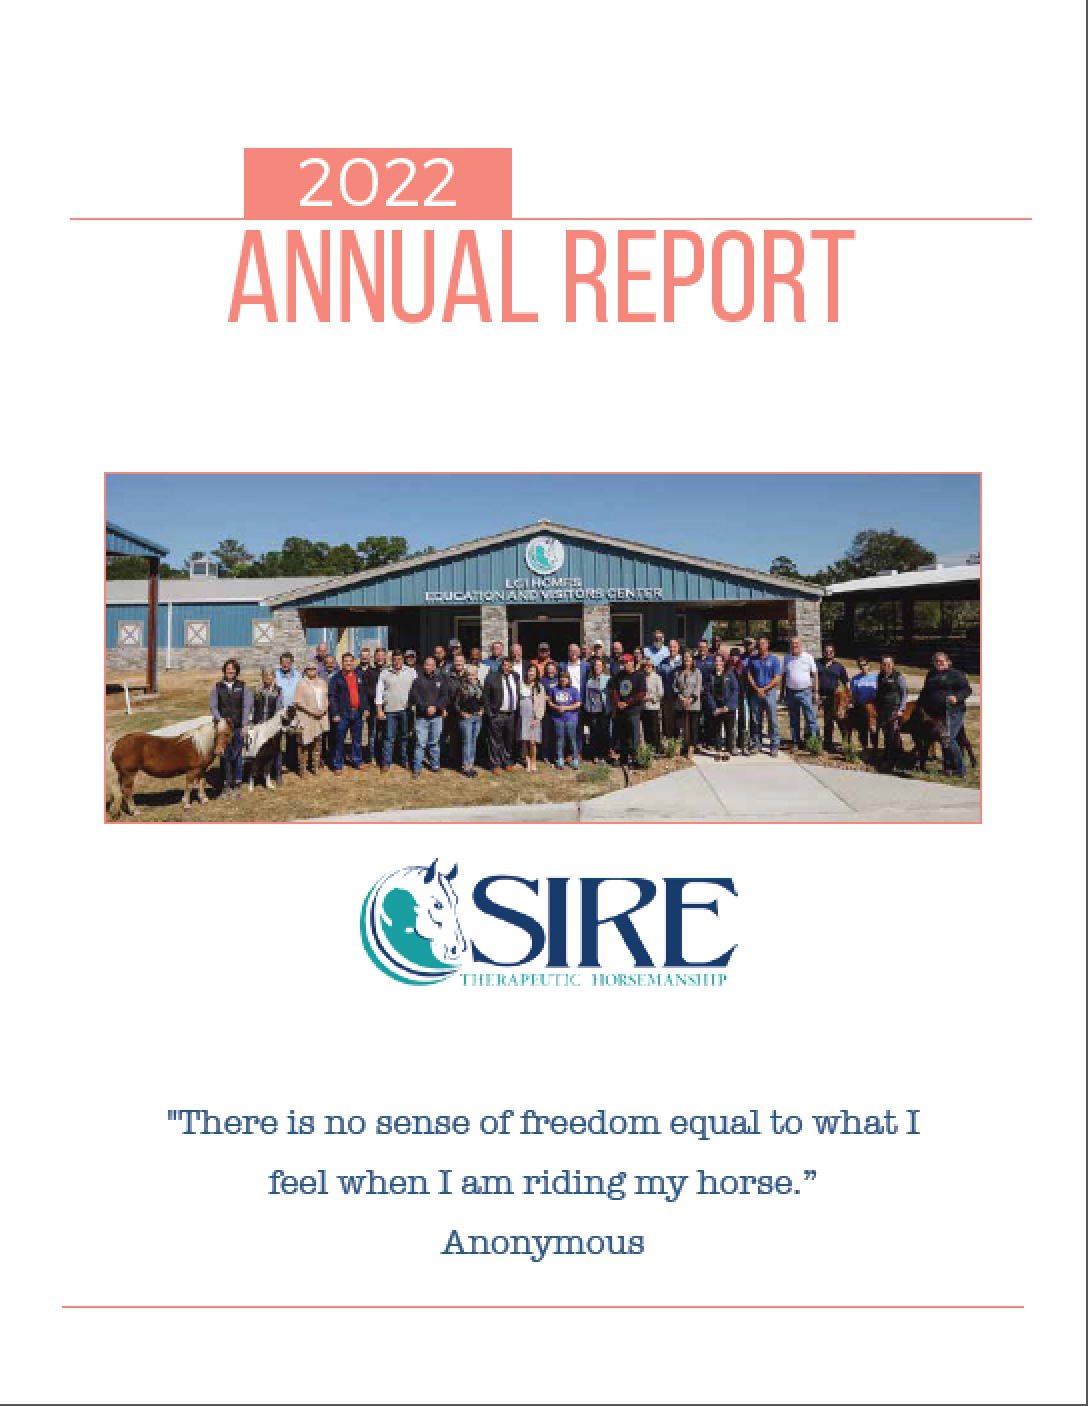 SIRE’s 2022 Annual Report